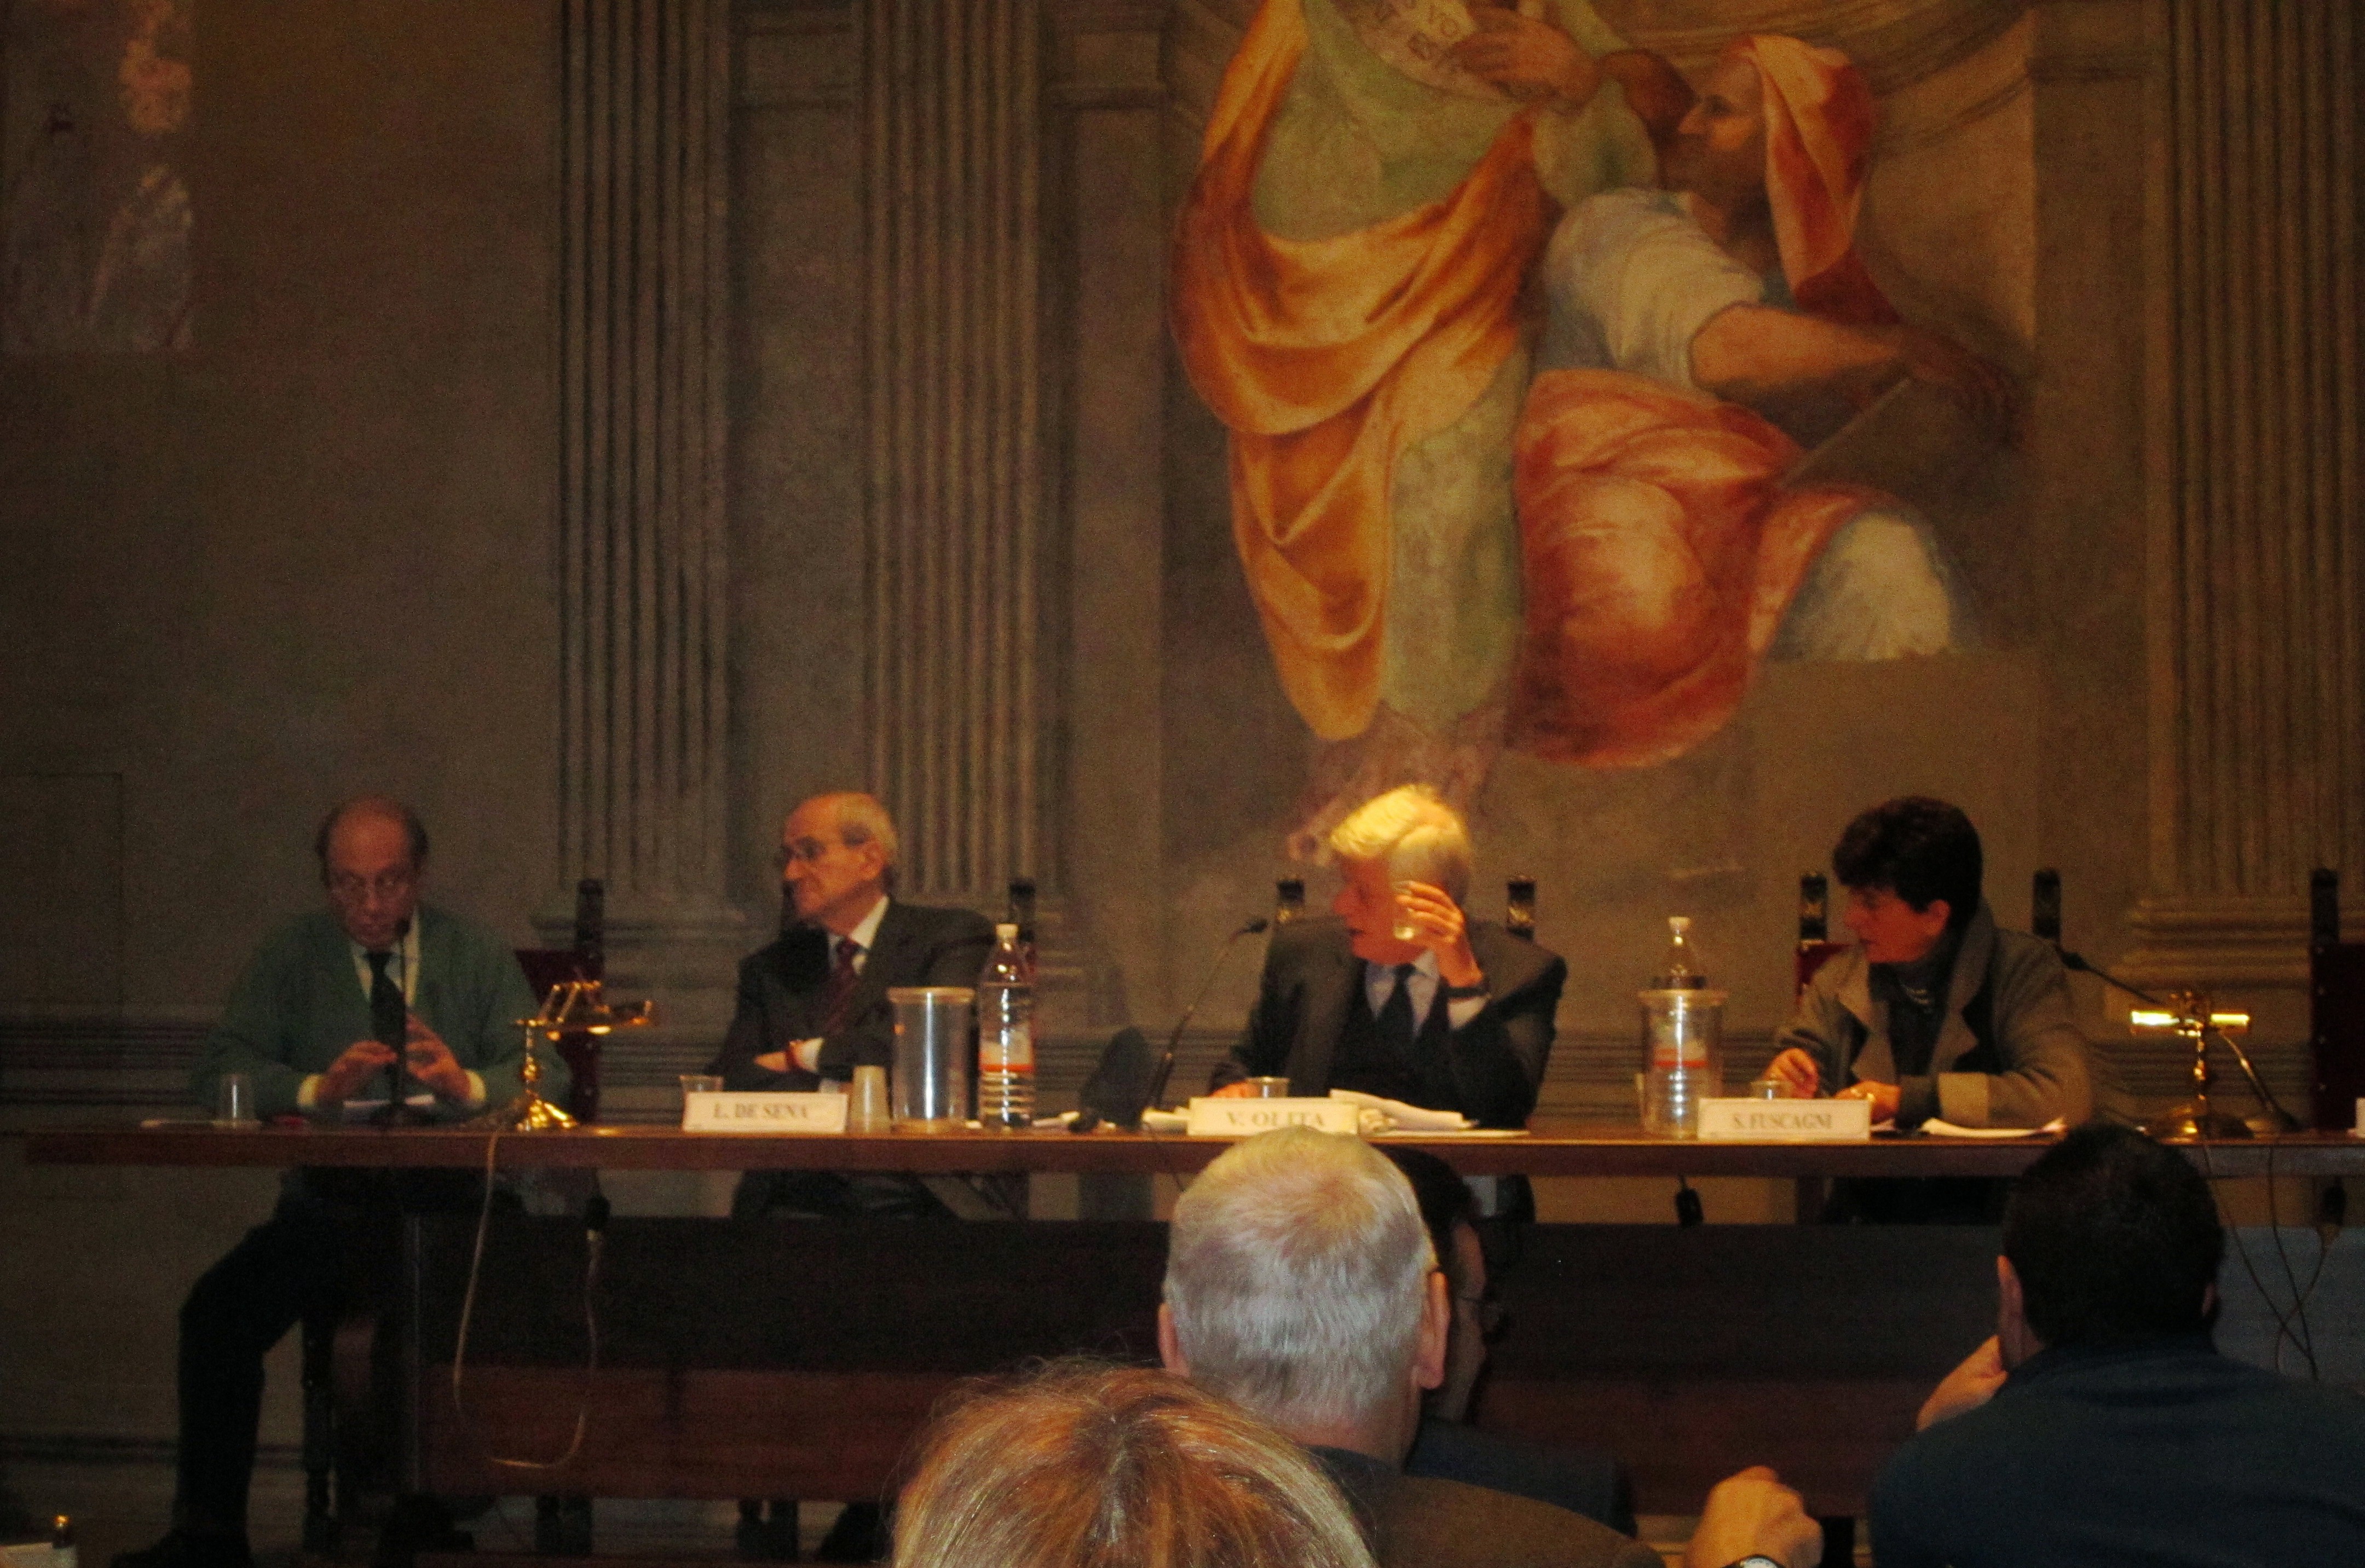 Roma, La passione per la Libertà - Colloquio fra organizzazioni liberali - 1° marzo 2014